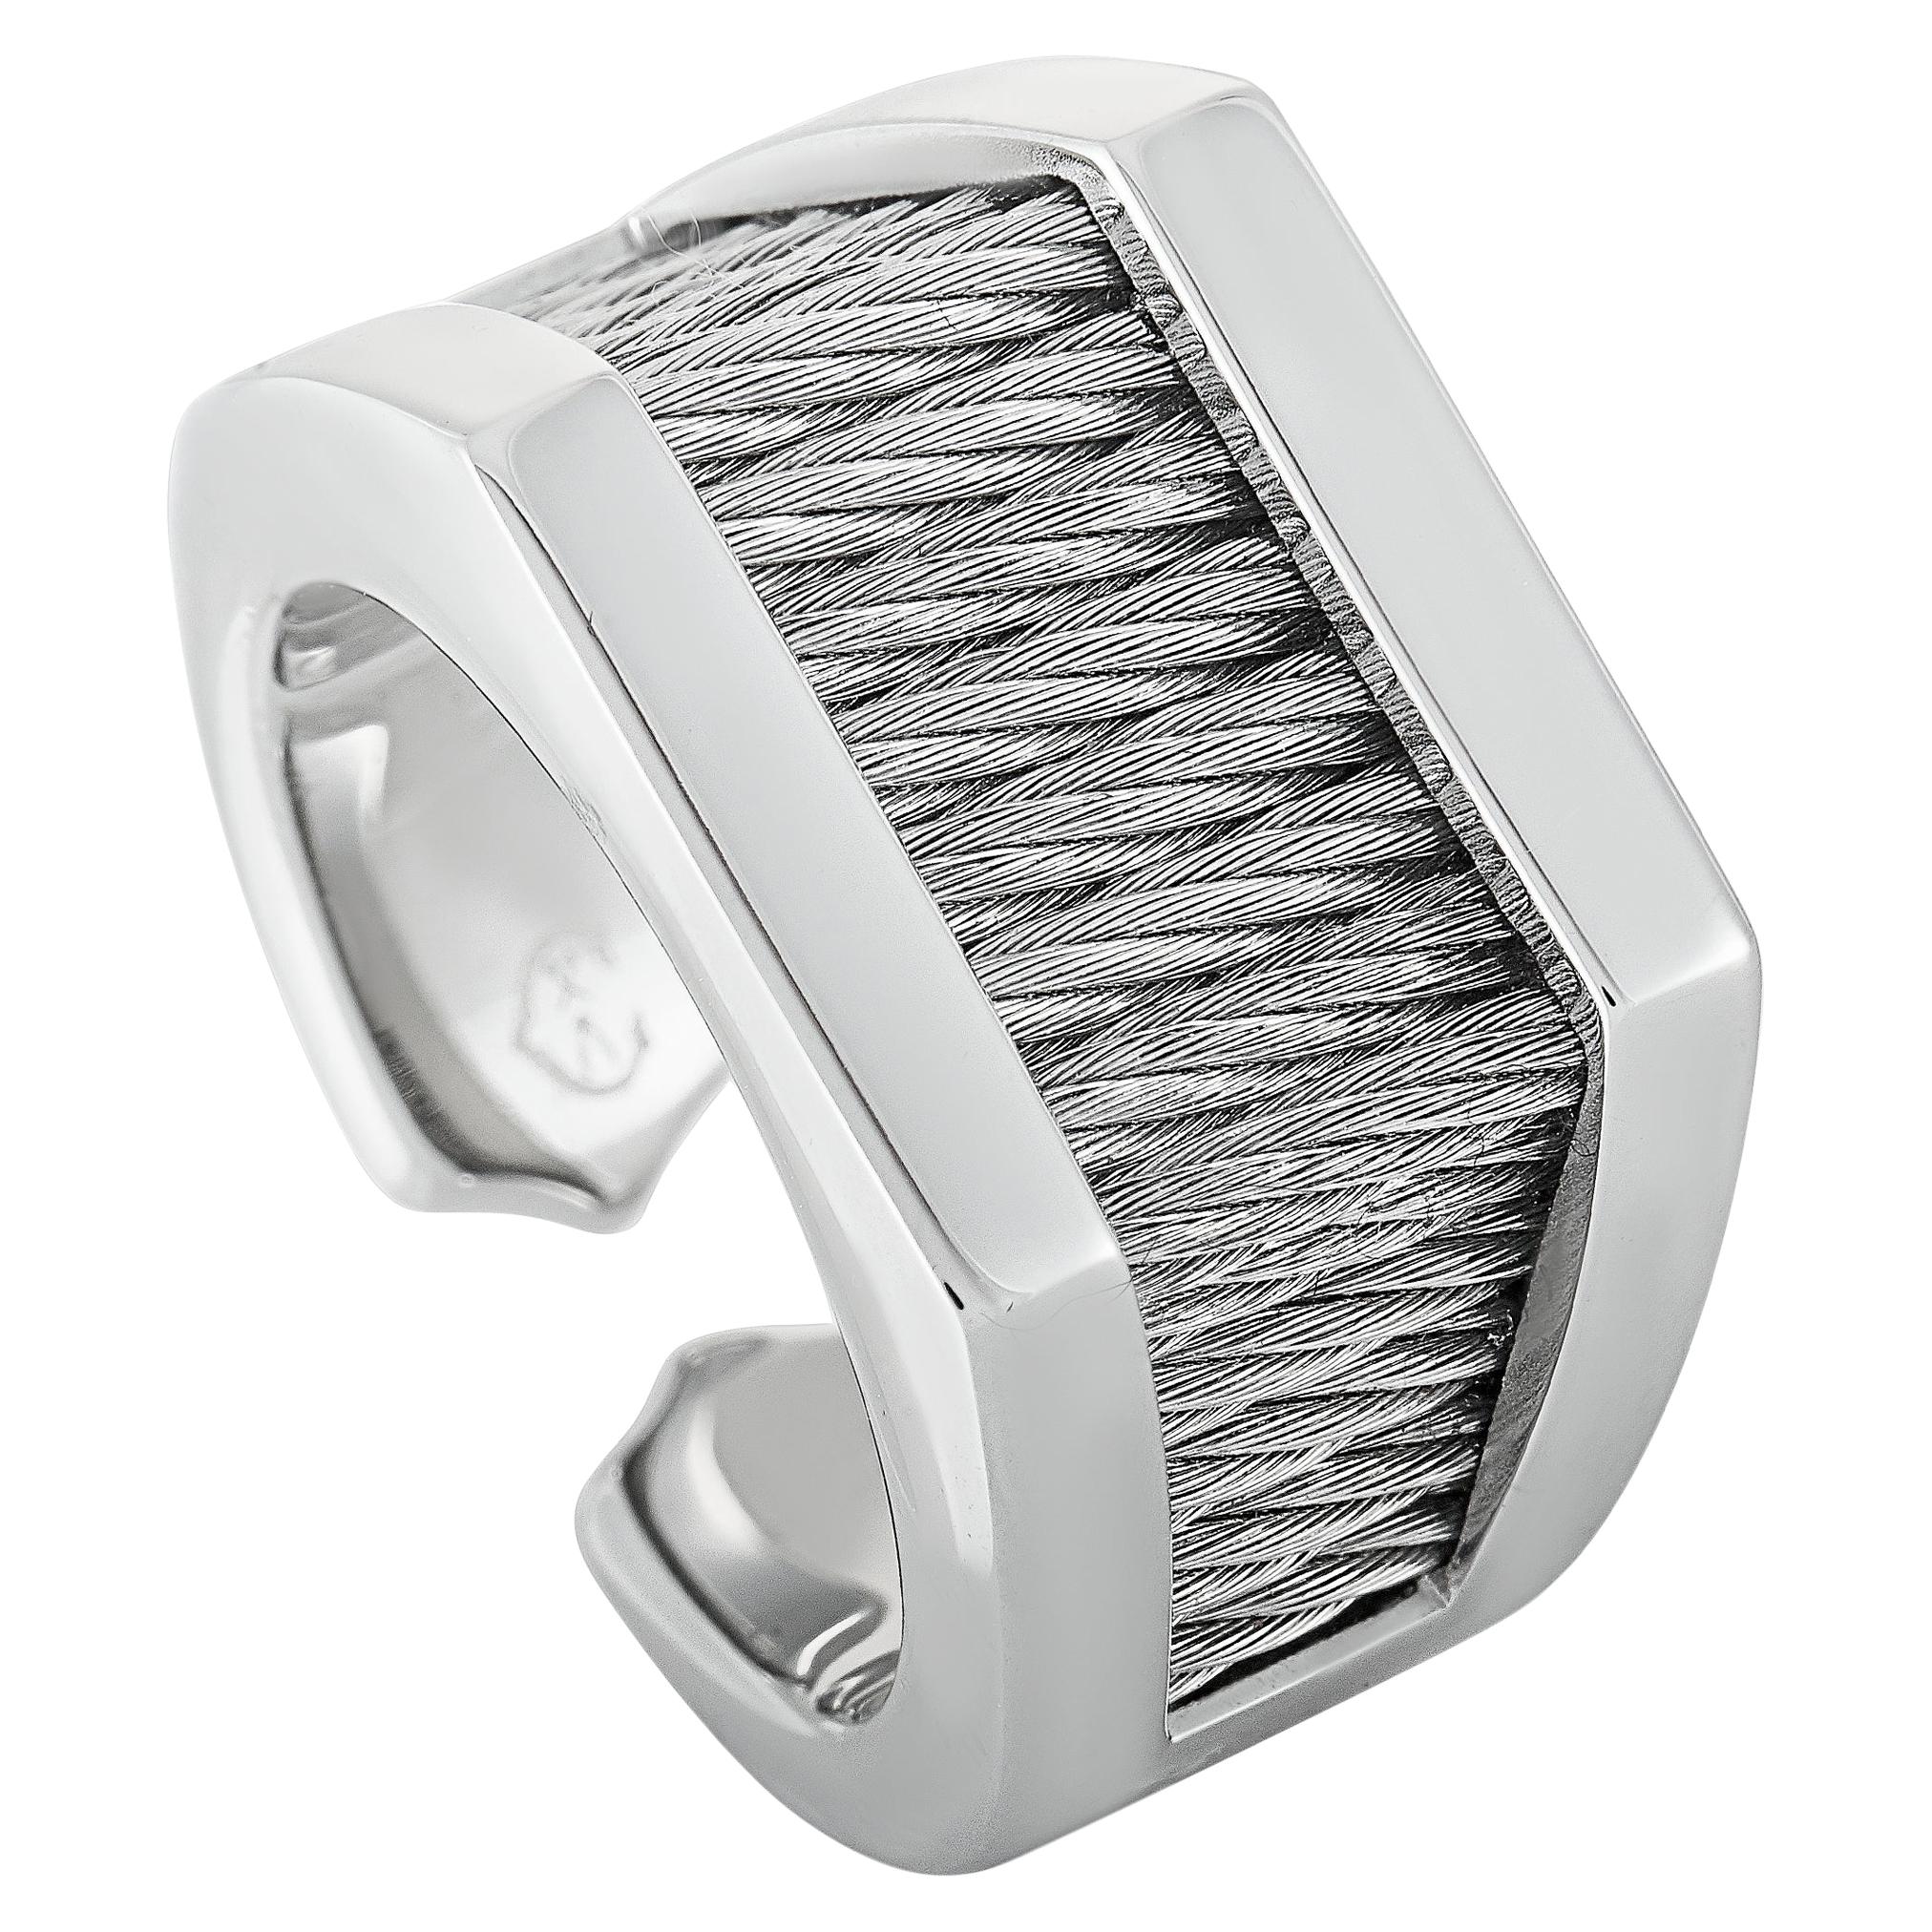 Charriol Forever Stainless Steel Ring